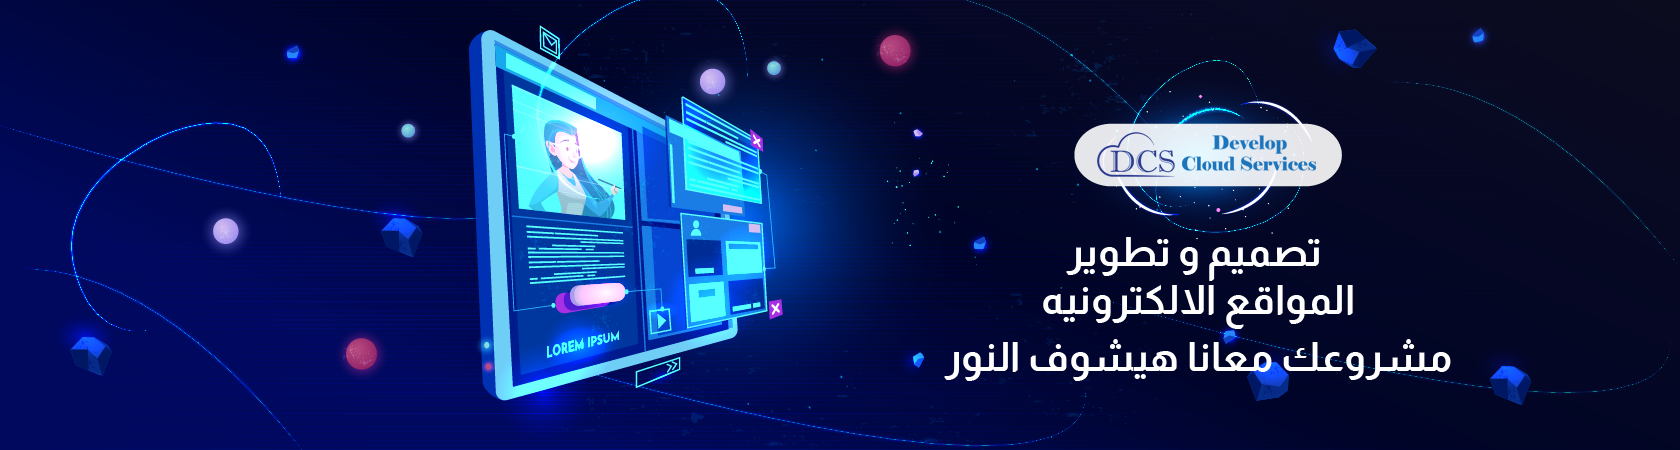 web_design_arabic